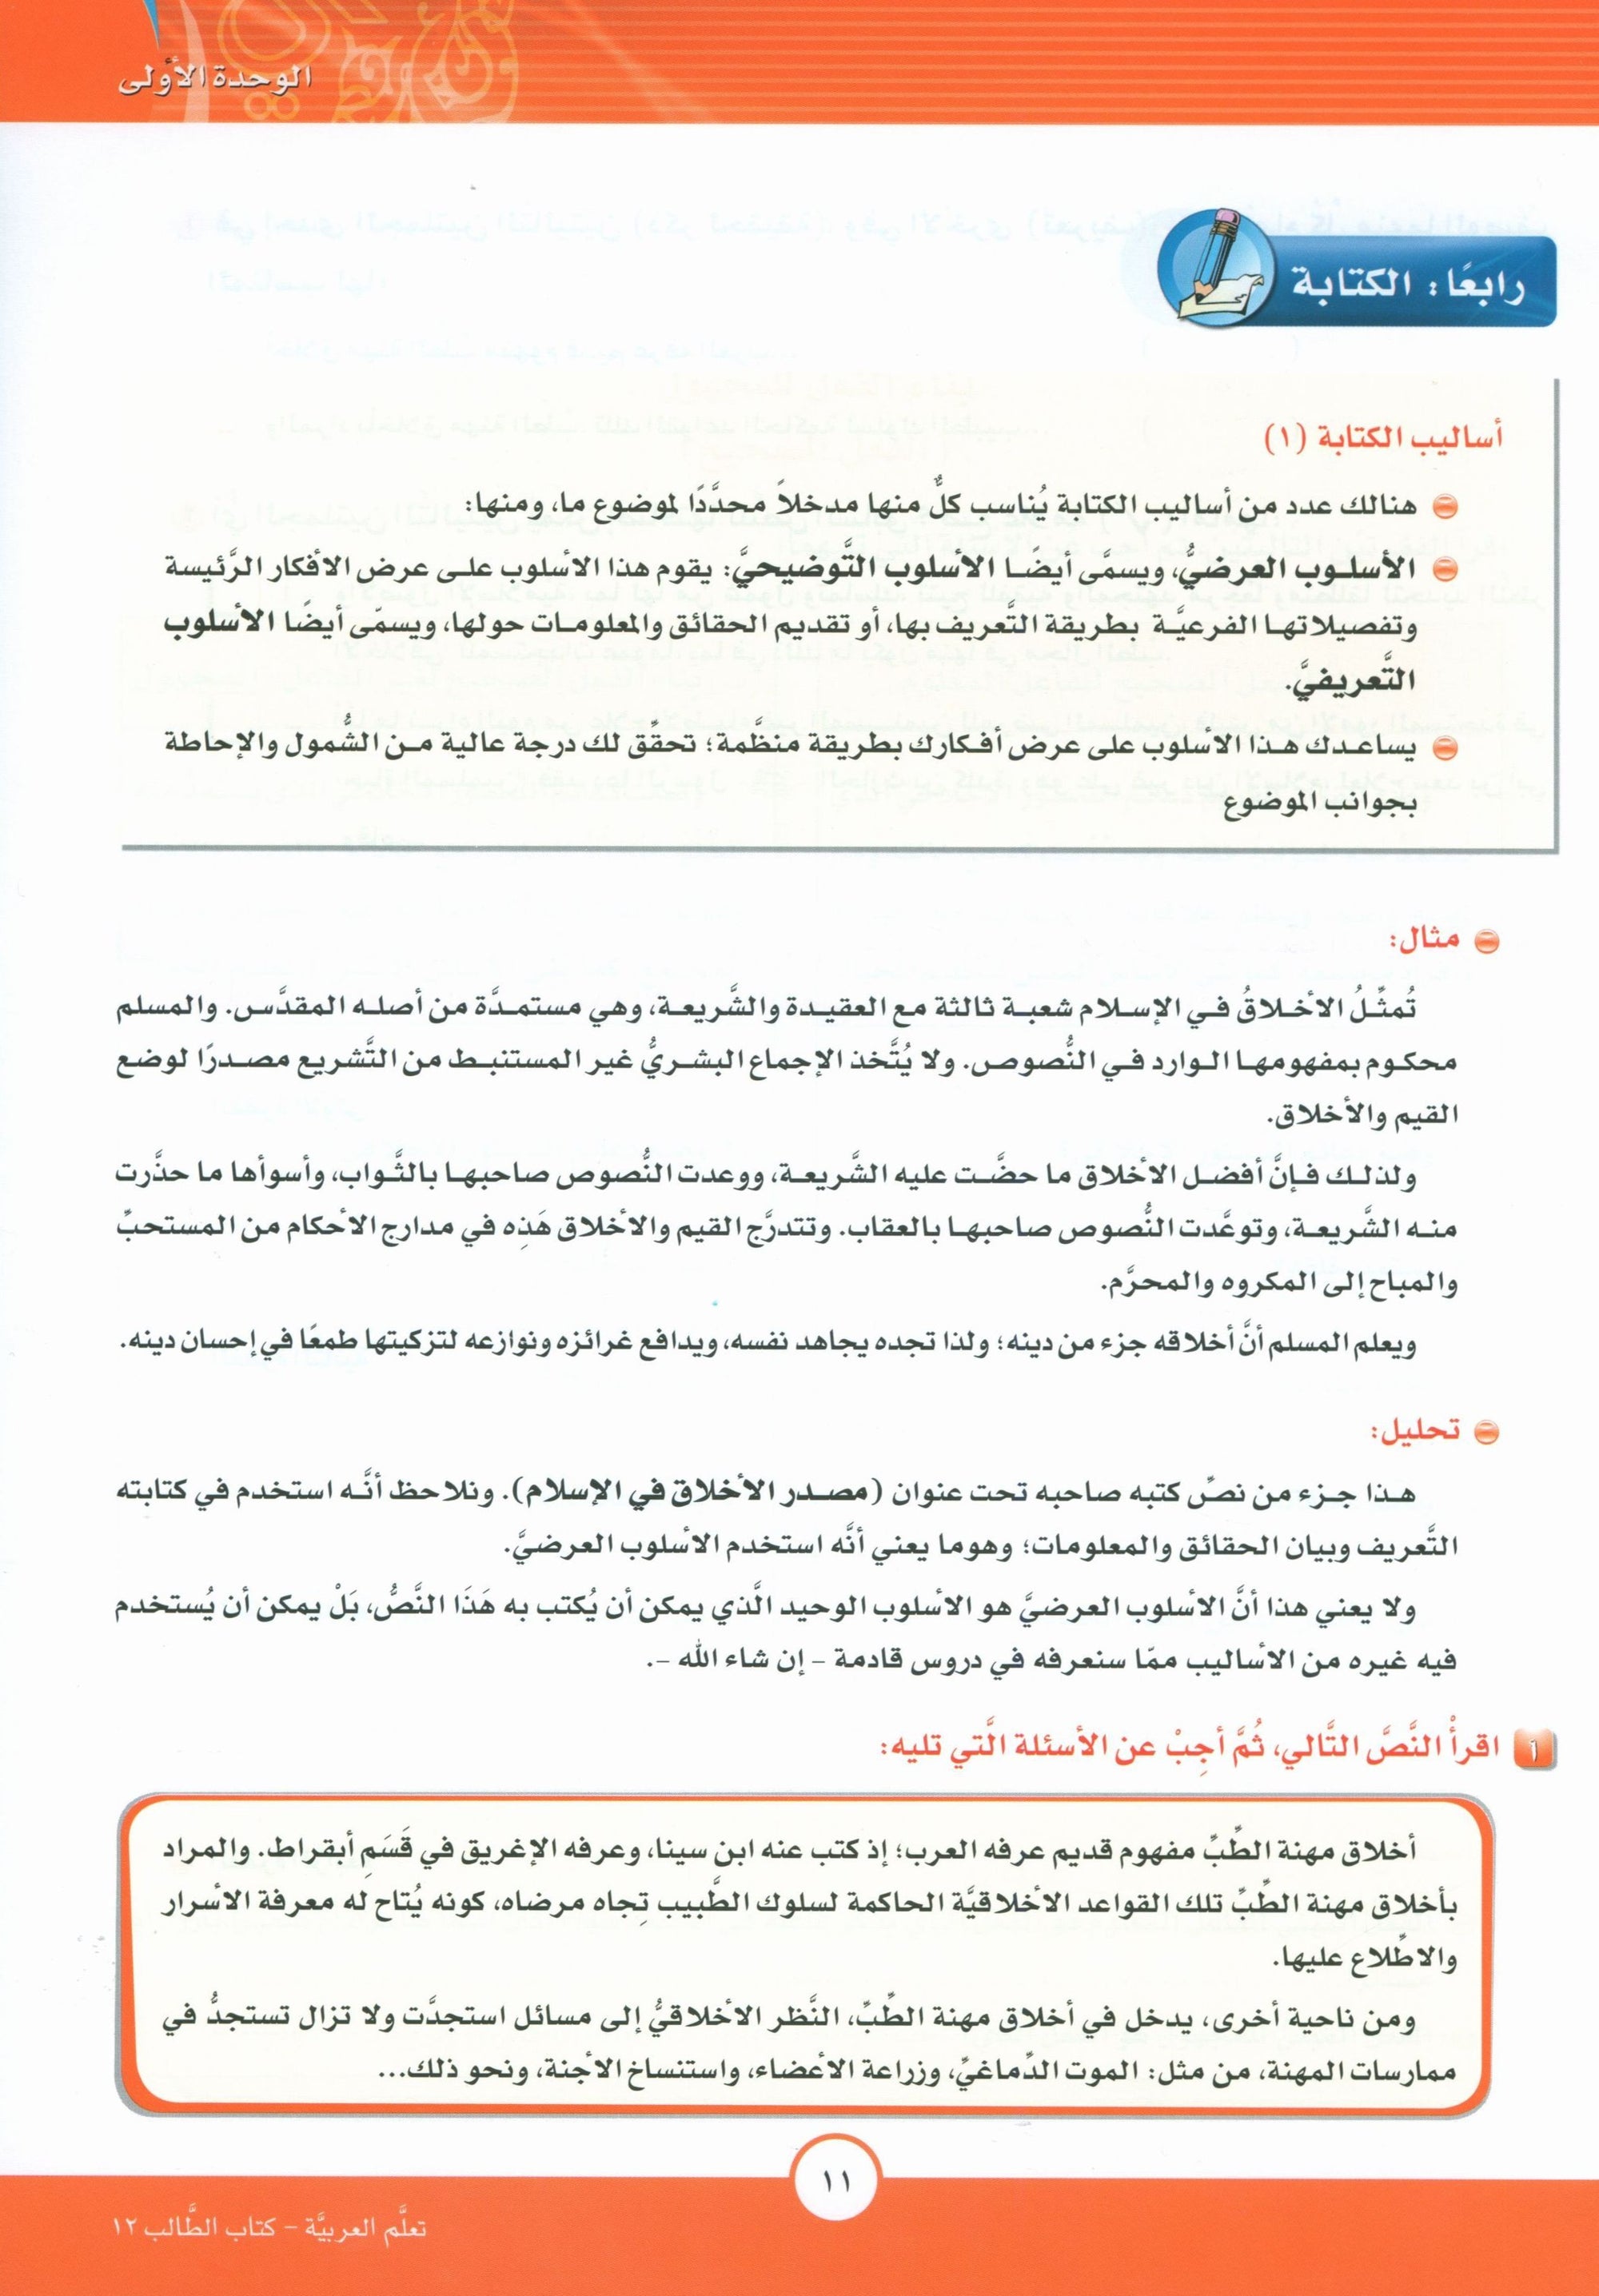 ICO Learn Arabic Textbook Level 12 Part 1 تعلم العربية كتاب التلميذ